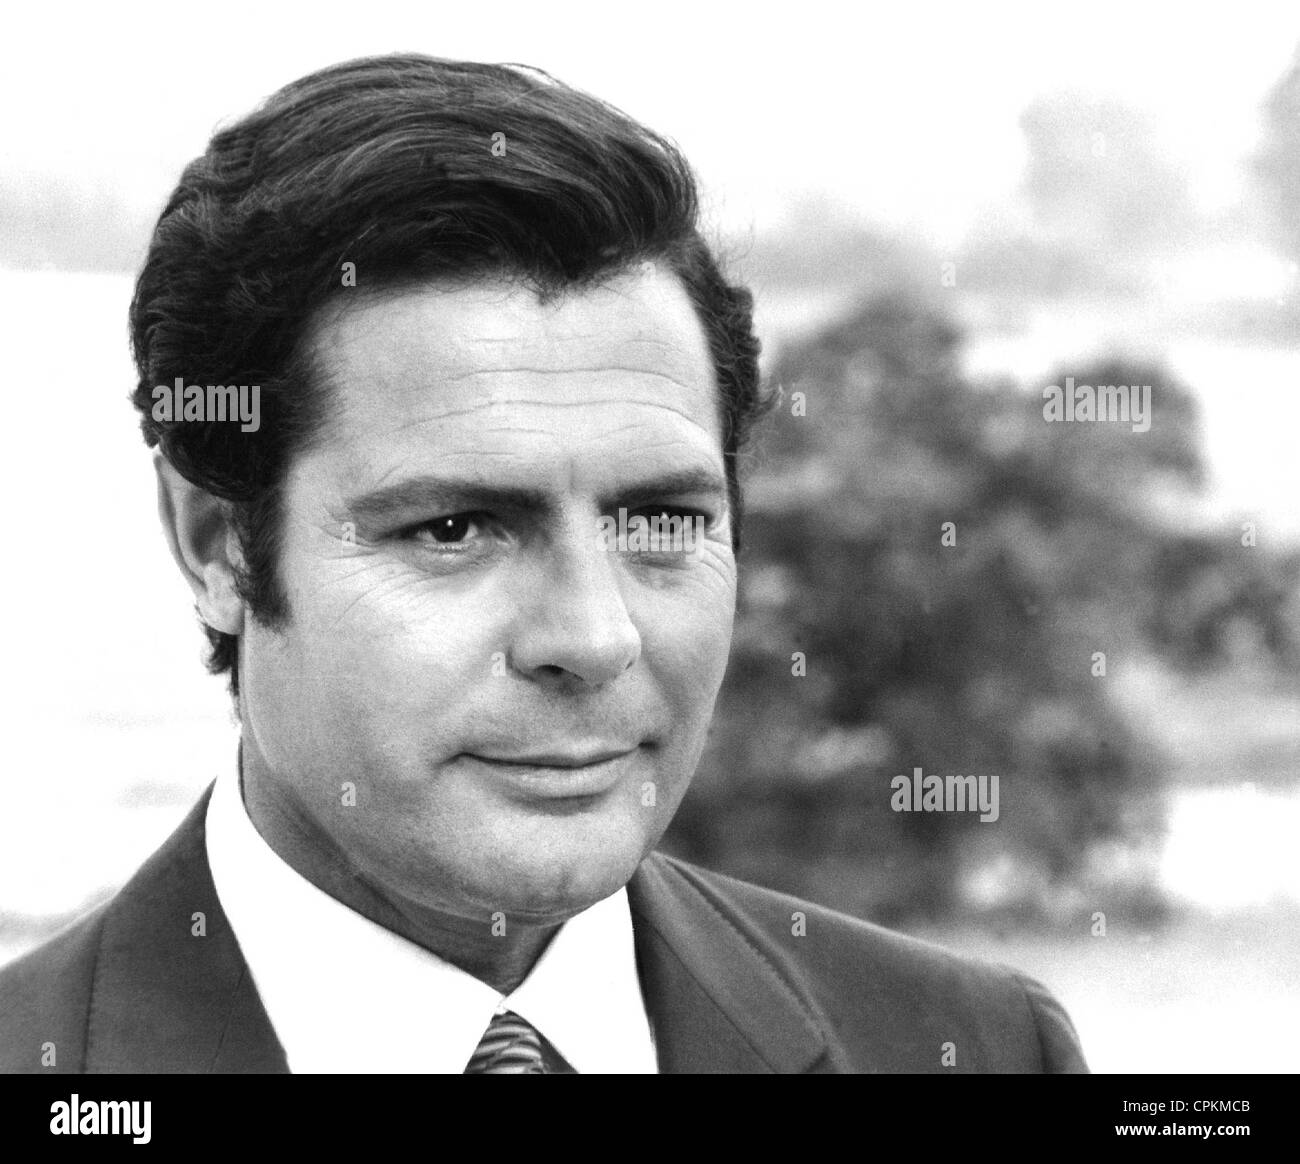 Schwarz / weiss Portrait des Schauspielers Marcello Mastrianni 1961 in Los Angeles getroffen. Er lächelt in die Kamera. Stockfoto